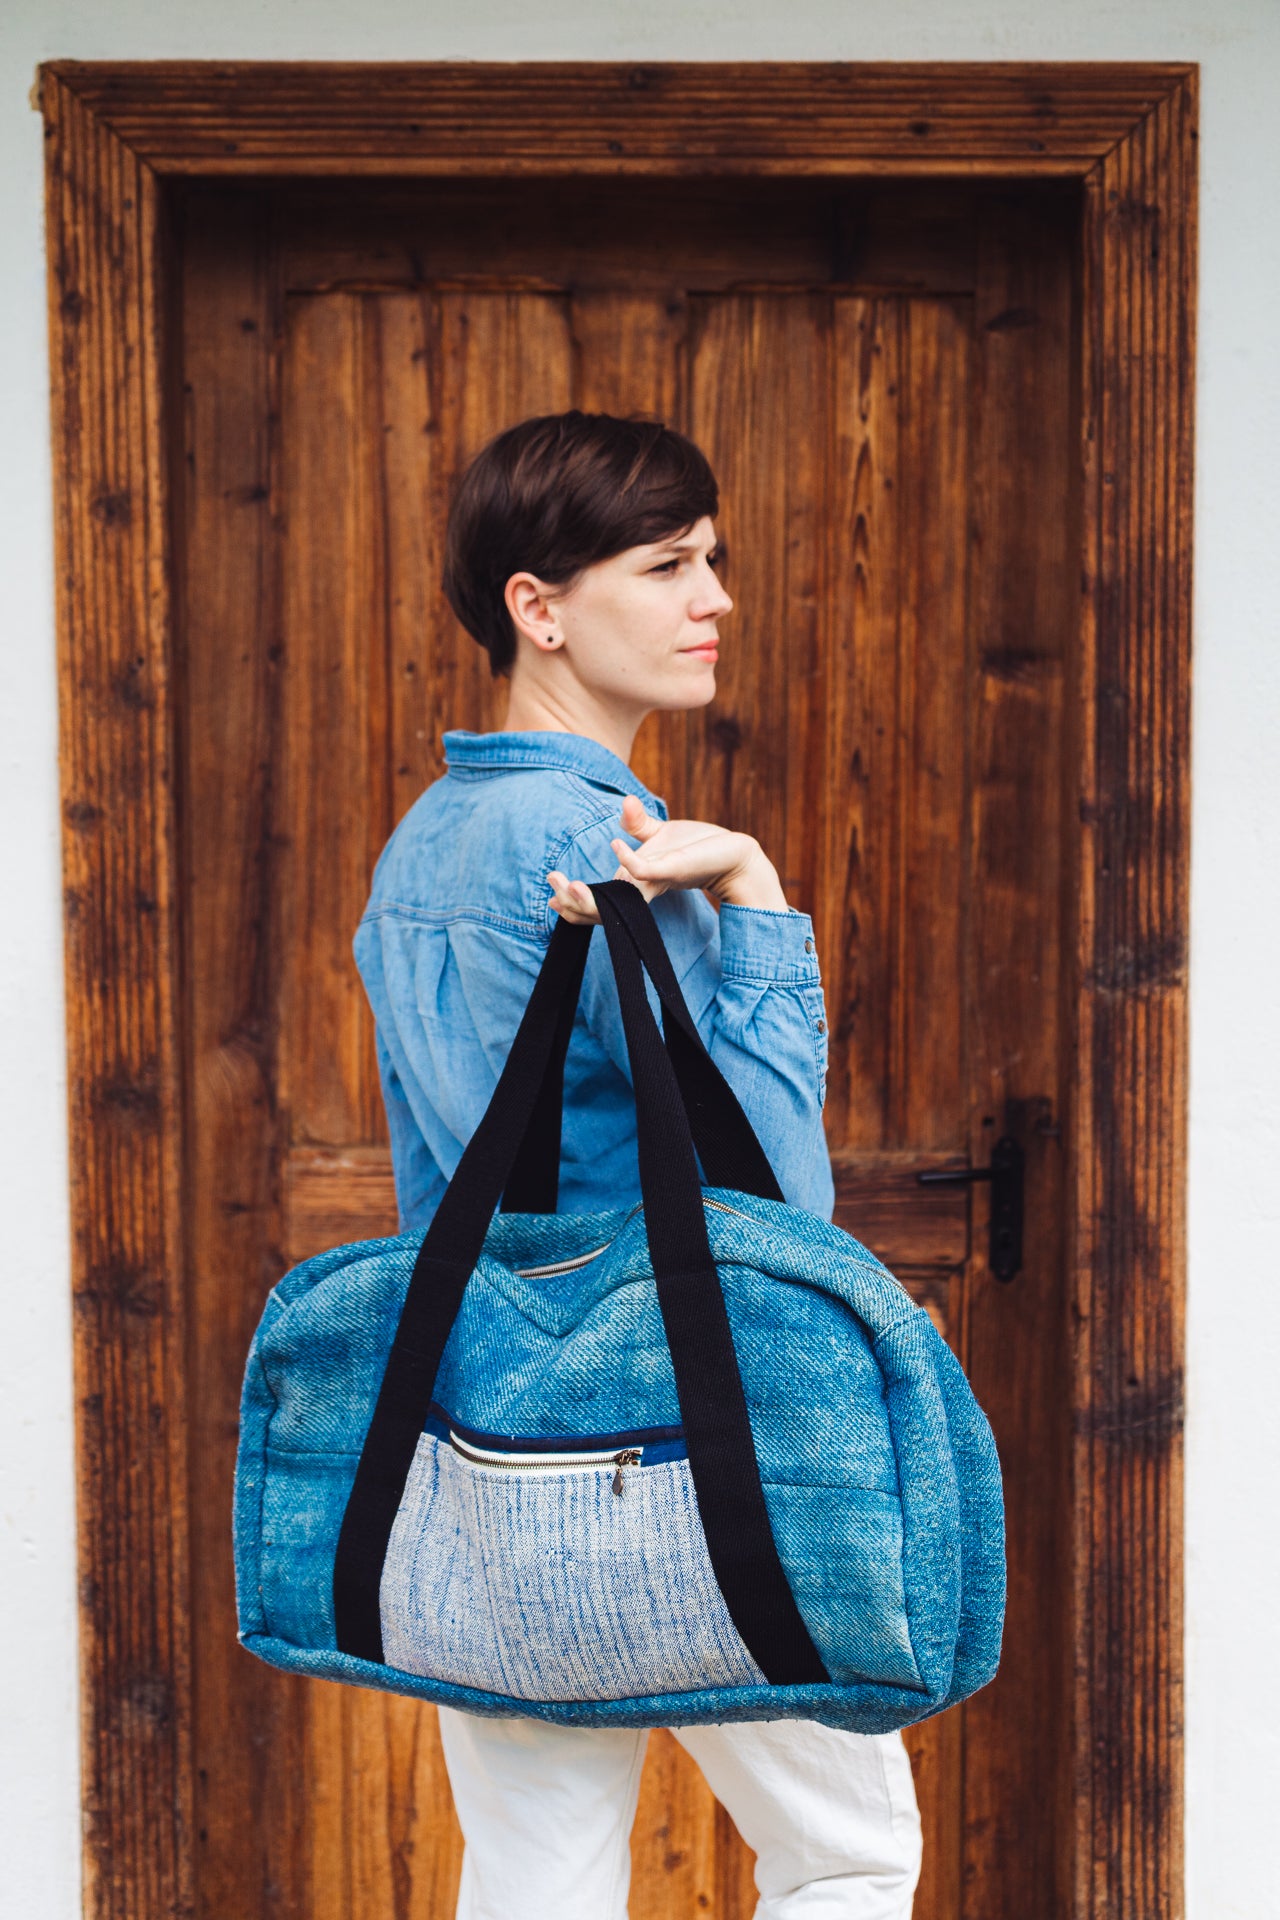 Bag: Handwoven hemp from antique grain sack - BG232